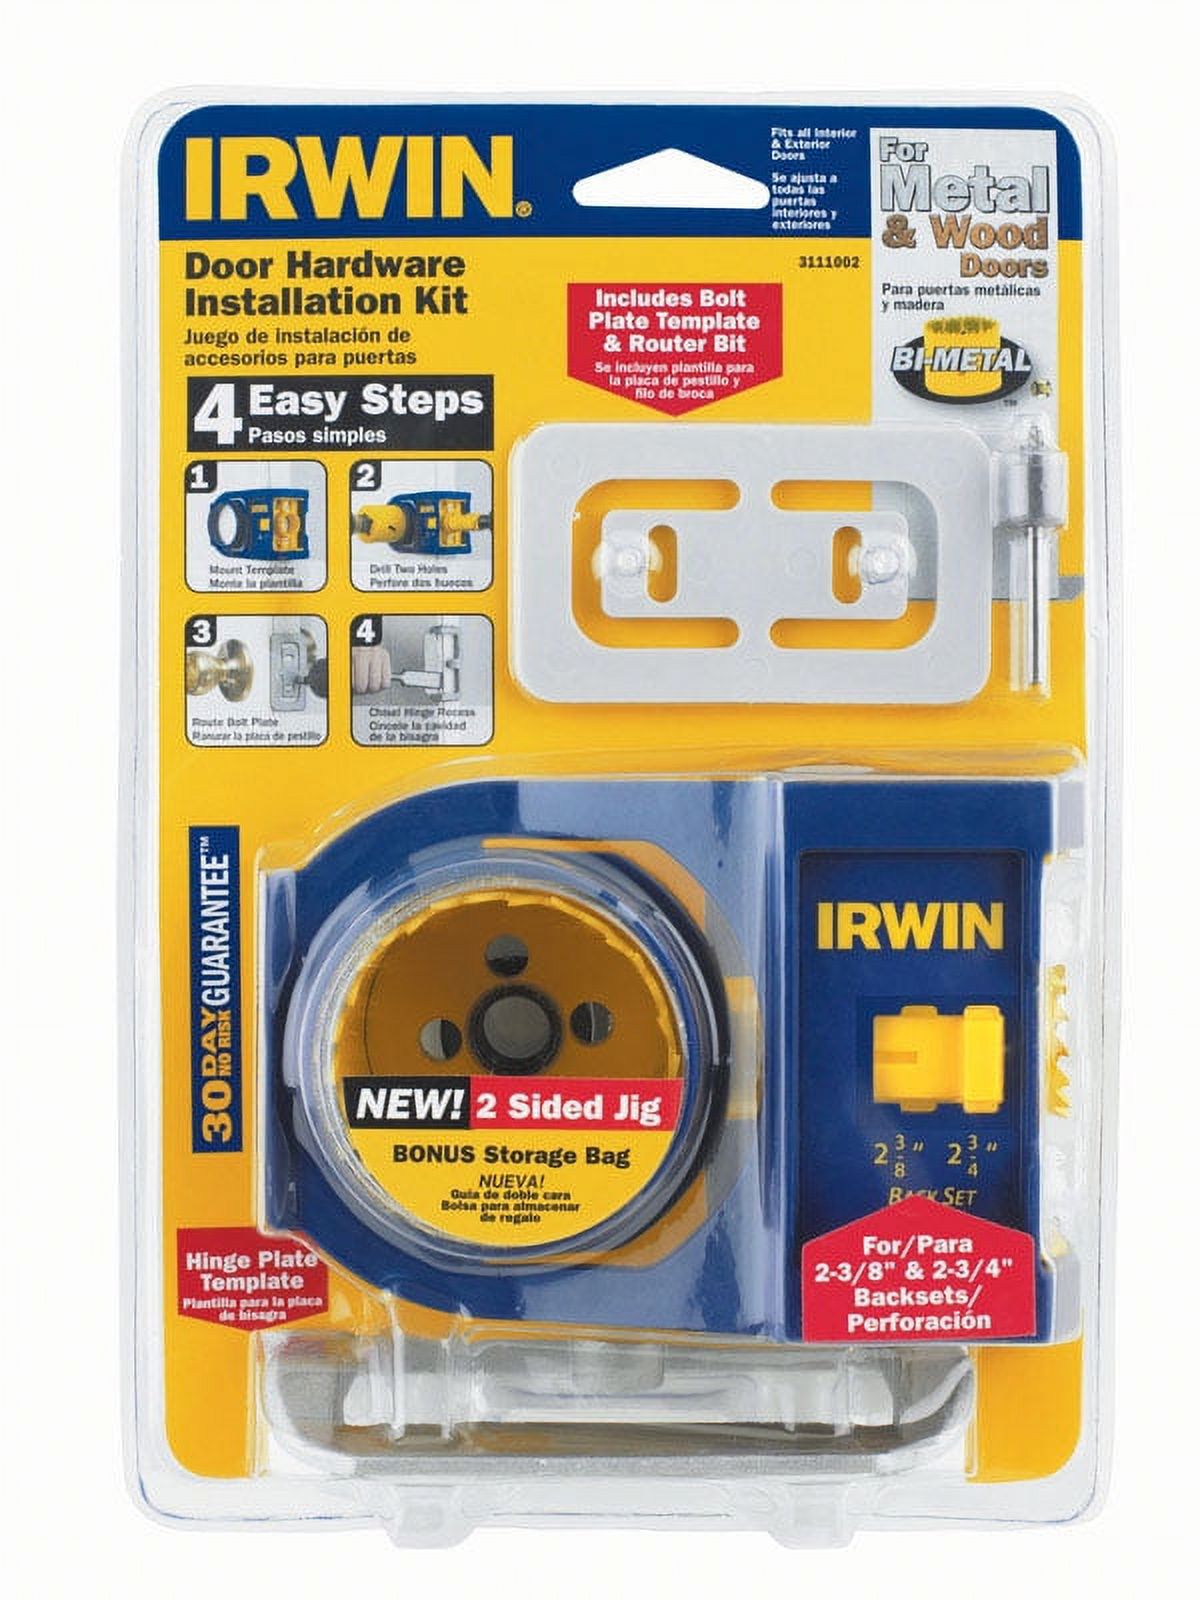 IRWIN 2-3/4 in. L Bi-Metal Door Lock Installation Kit 1 pc. - image 1 of 4